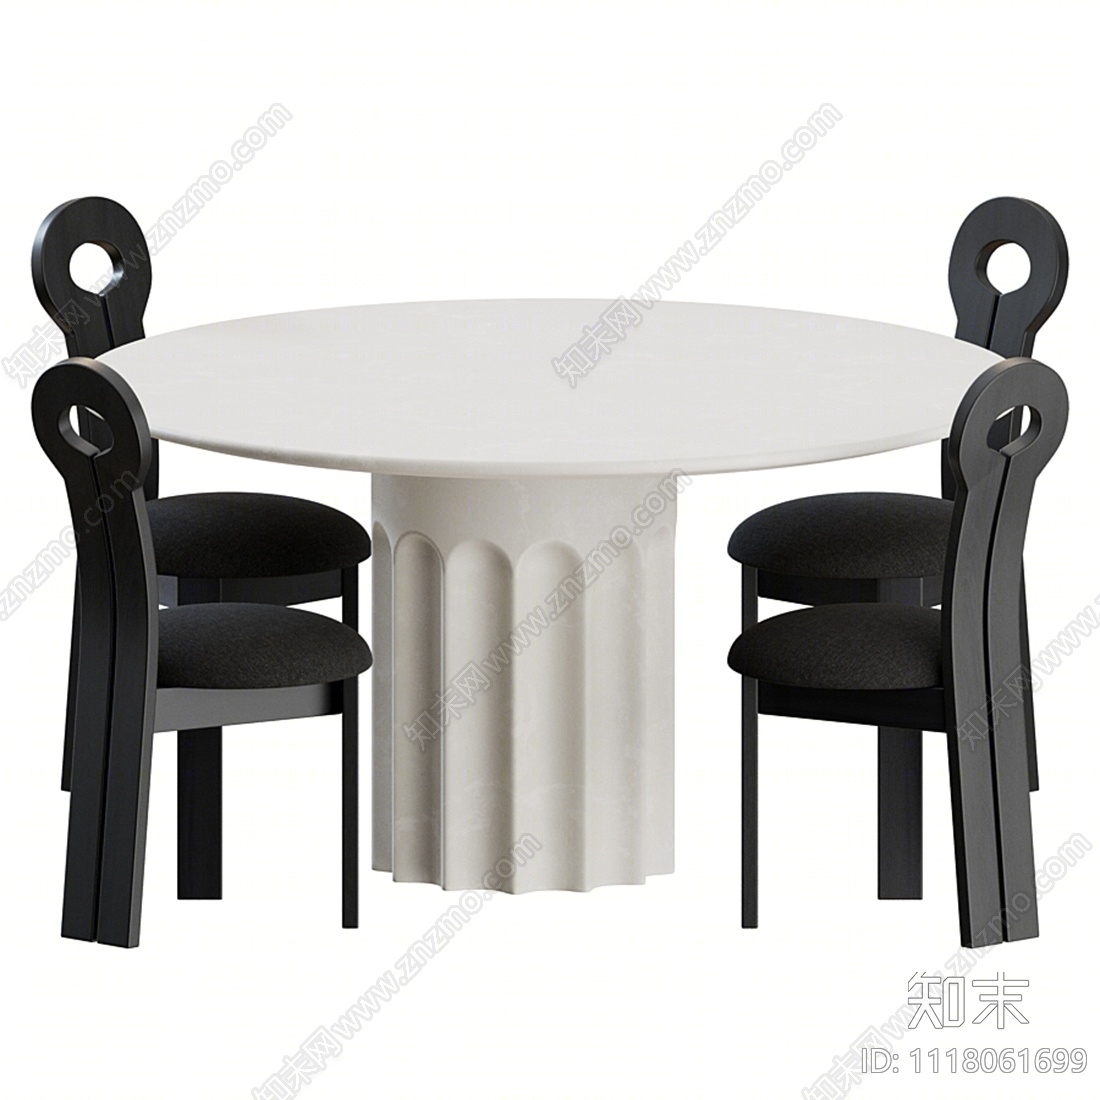 北欧餐桌椅组合3D模型下载【ID:1118061699】